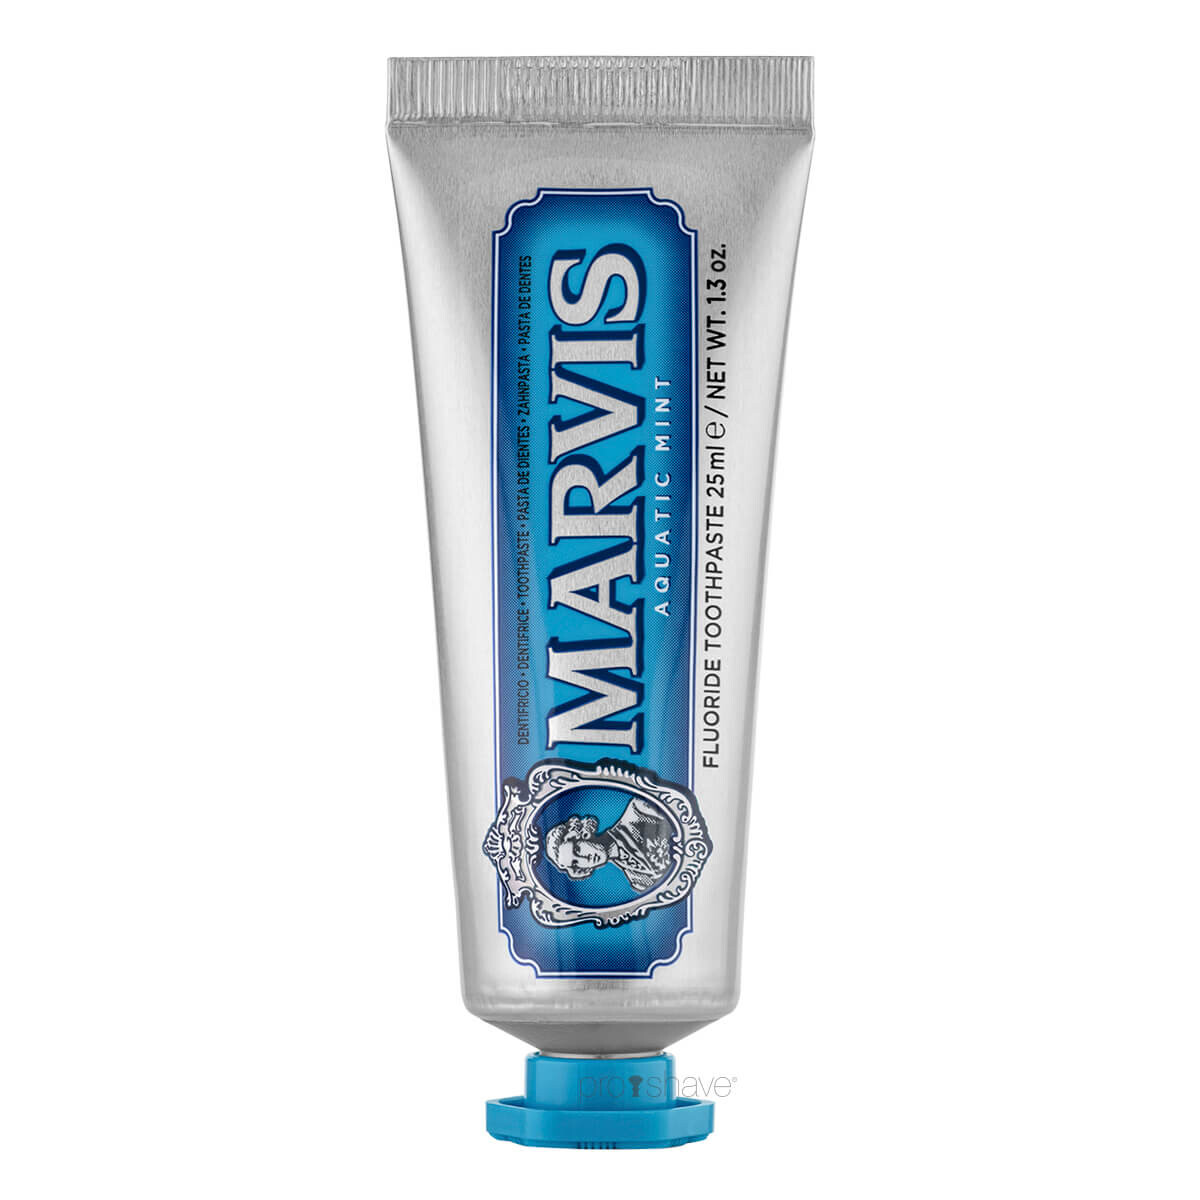 Marvis Aquatic Mint Tandpasta, Rejsestørrelse, 25 ml.